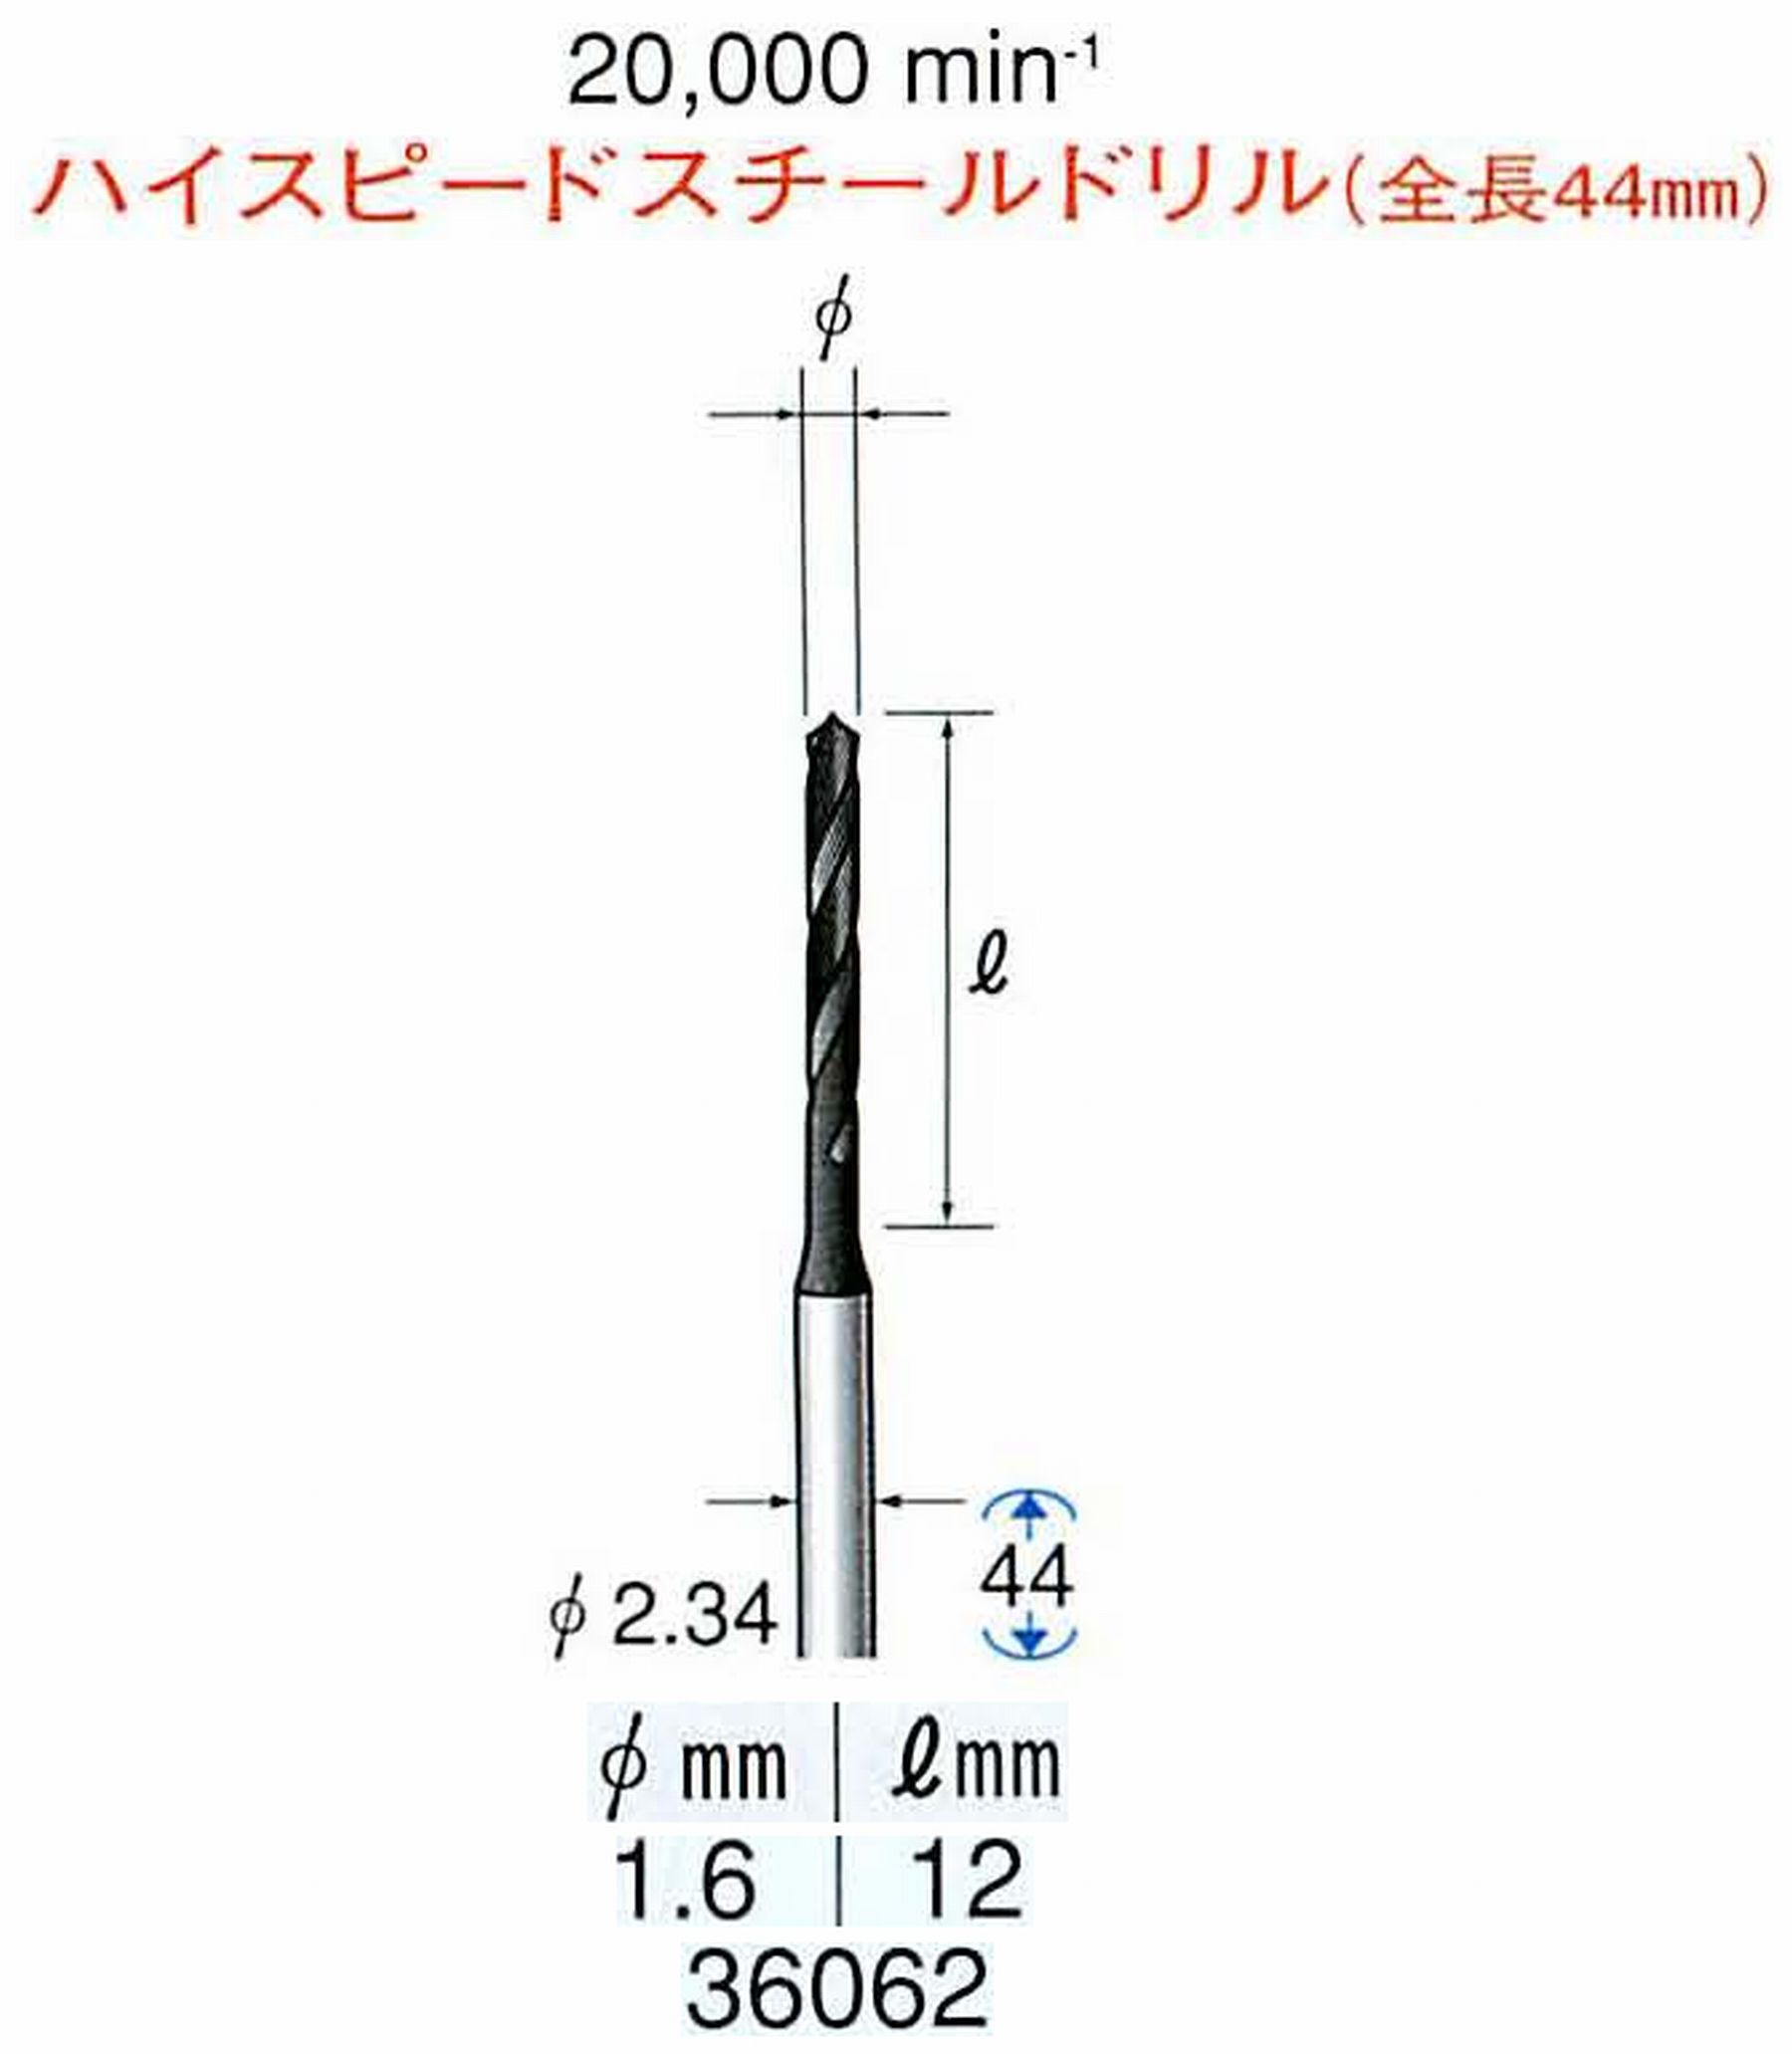 ナカニシ/NAKANISHI ツイストドリル ハイスピードスチール(H.S.S)ドリル(全長44mm) 軸径(シャンク) φ2.34mm 36062